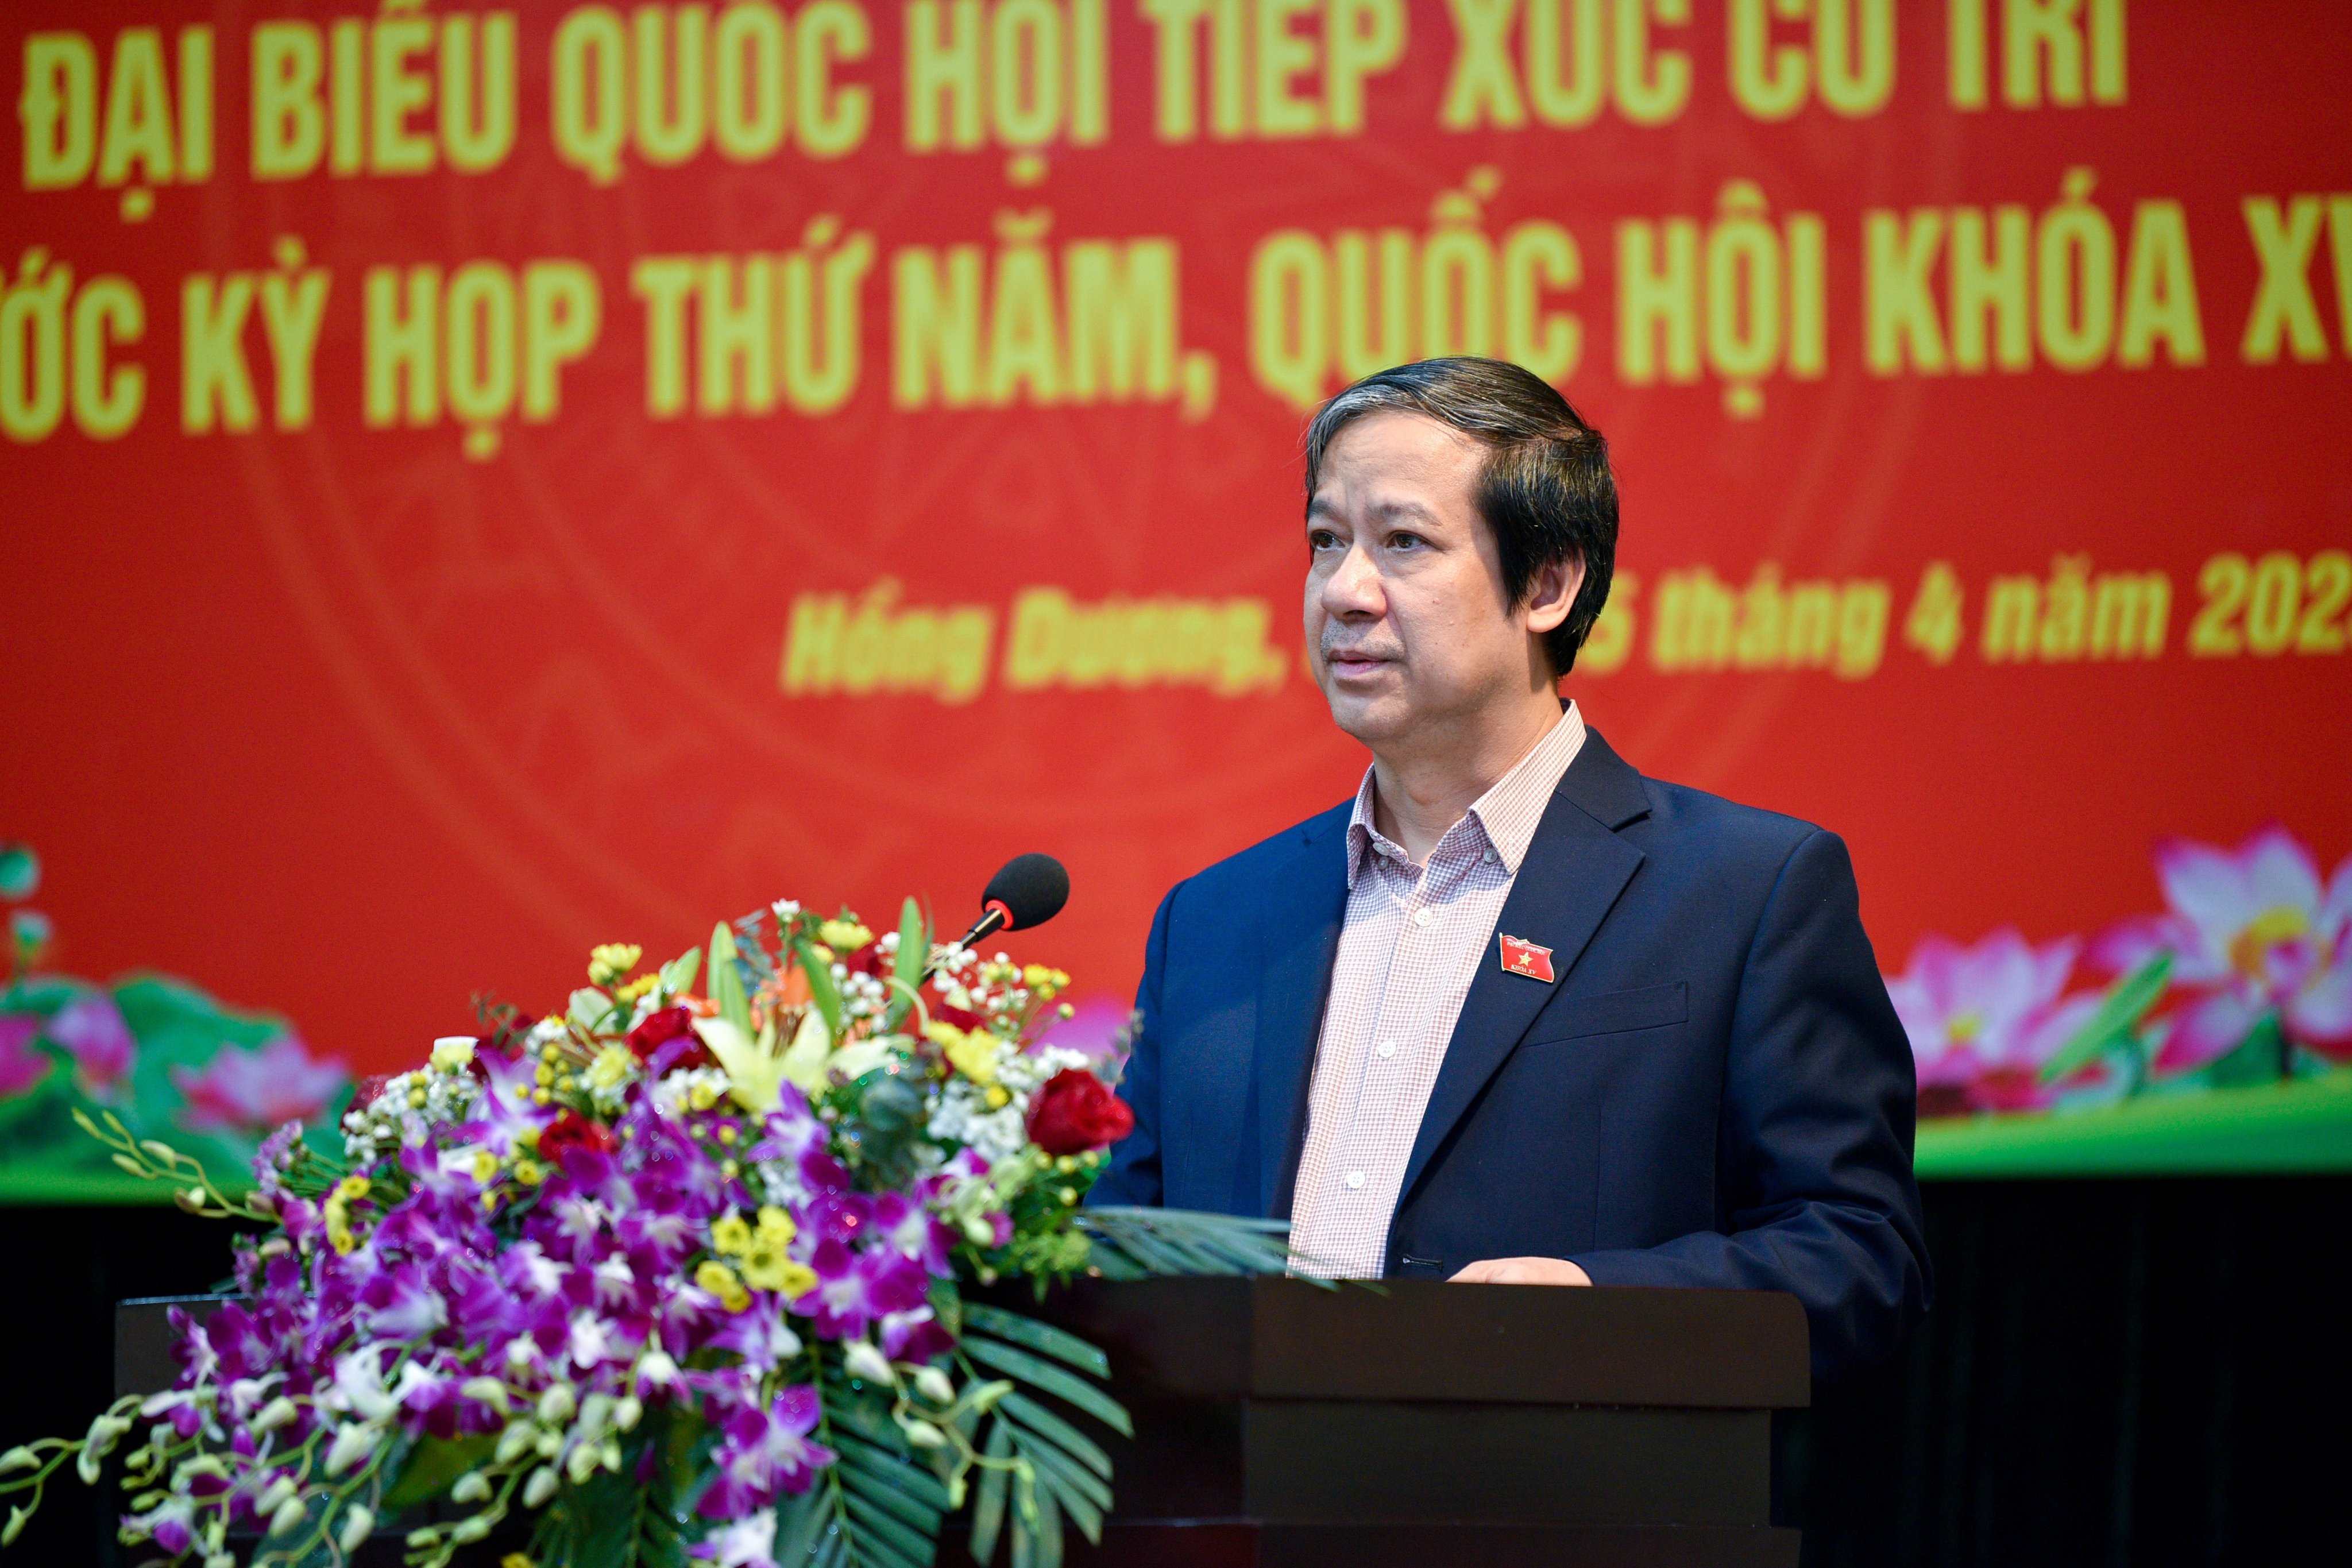 Bộ trưởng Bộ GD&ĐT Nguyễn Kim Sơn báo cáo cử tri huyện Thanh Oai (Hà Nội) dự kiến nội dung Kỳ họp thứ 5, Quốc hội khóa XV.